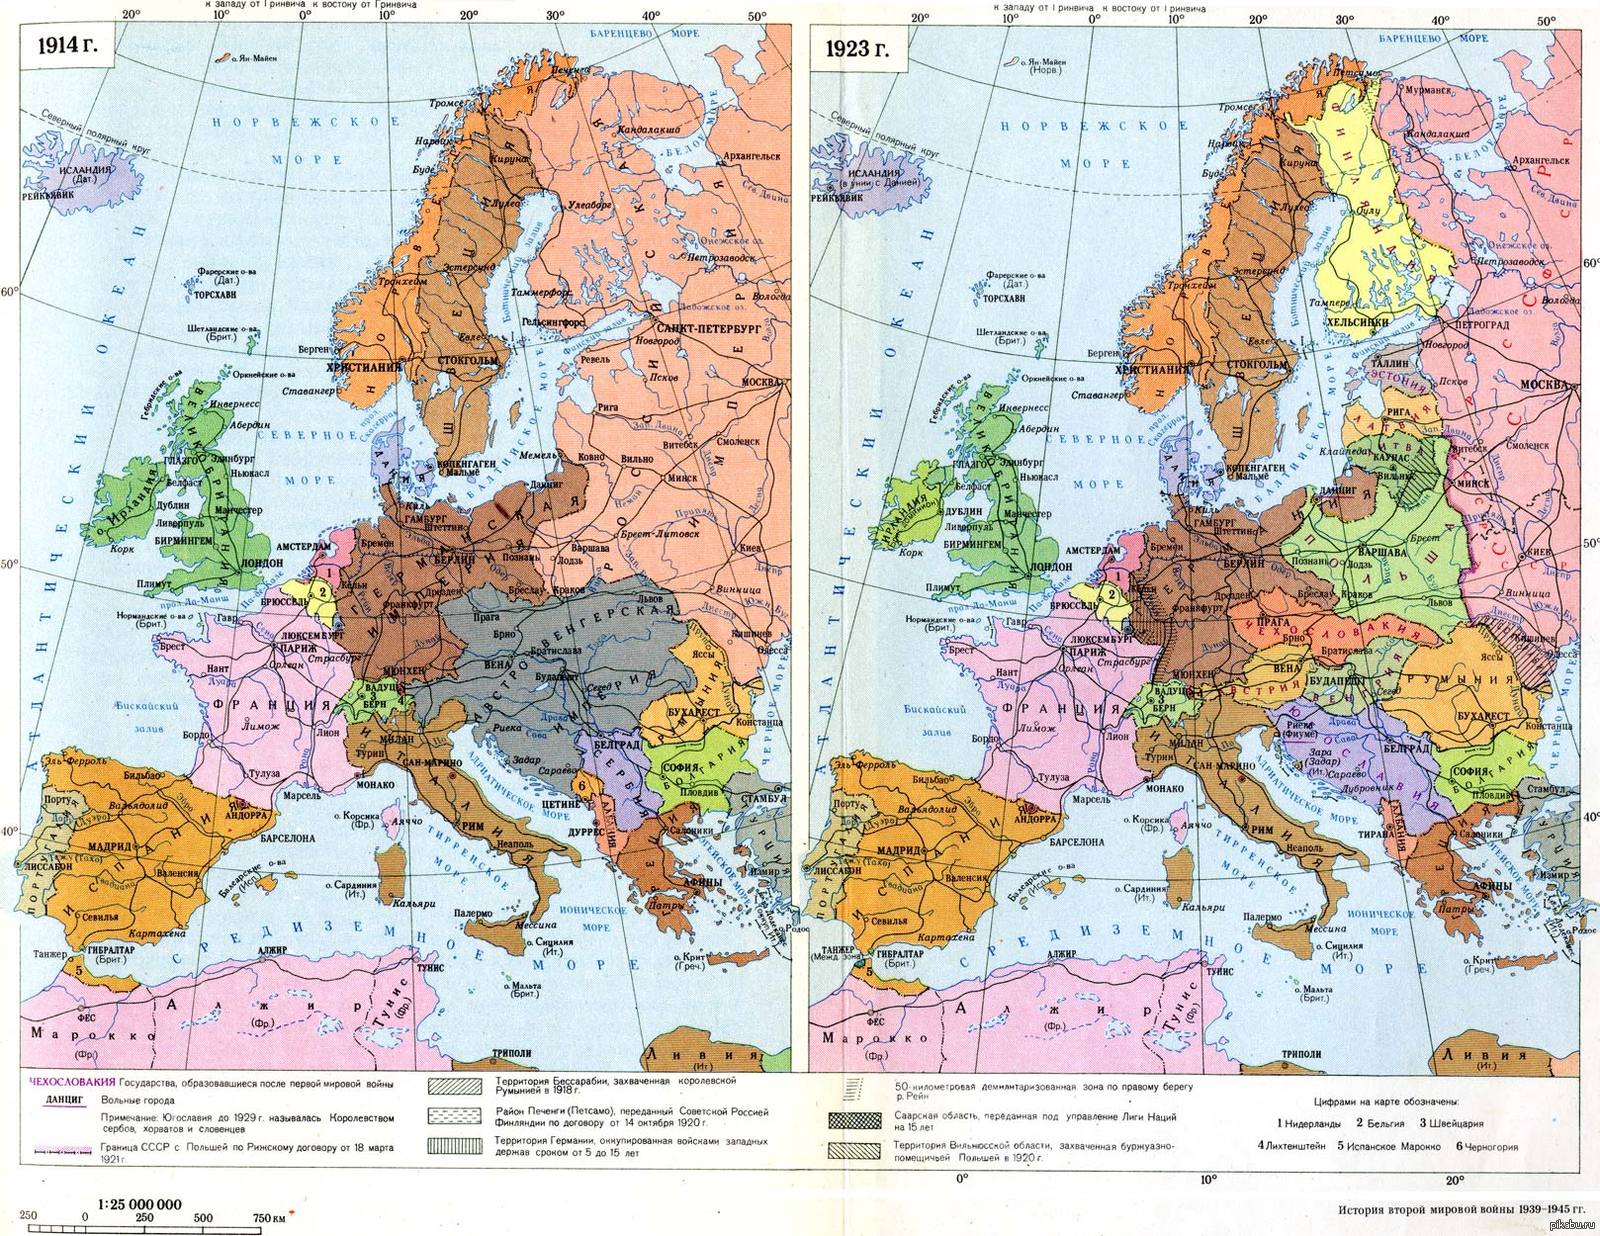  Карта Европы до и после Первой мировой войны. Найдите десять отличий